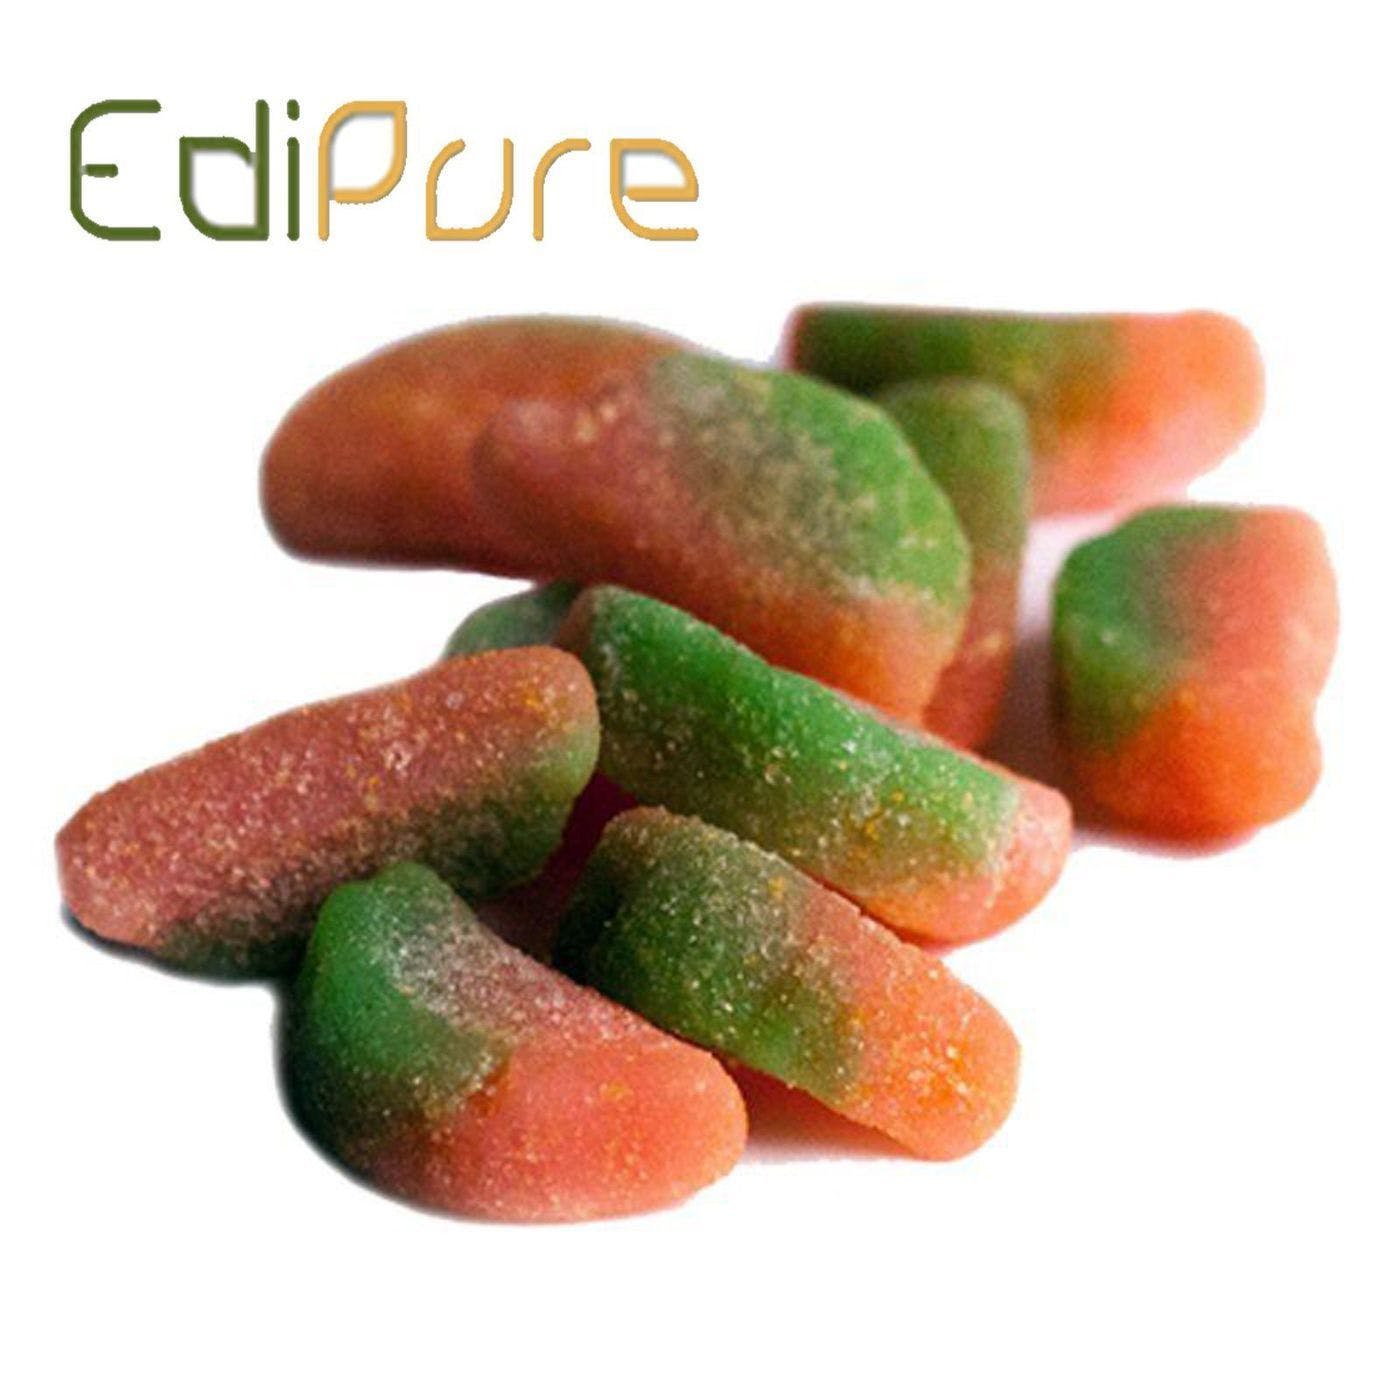 edible-sour-watermelon-gummies-edipure